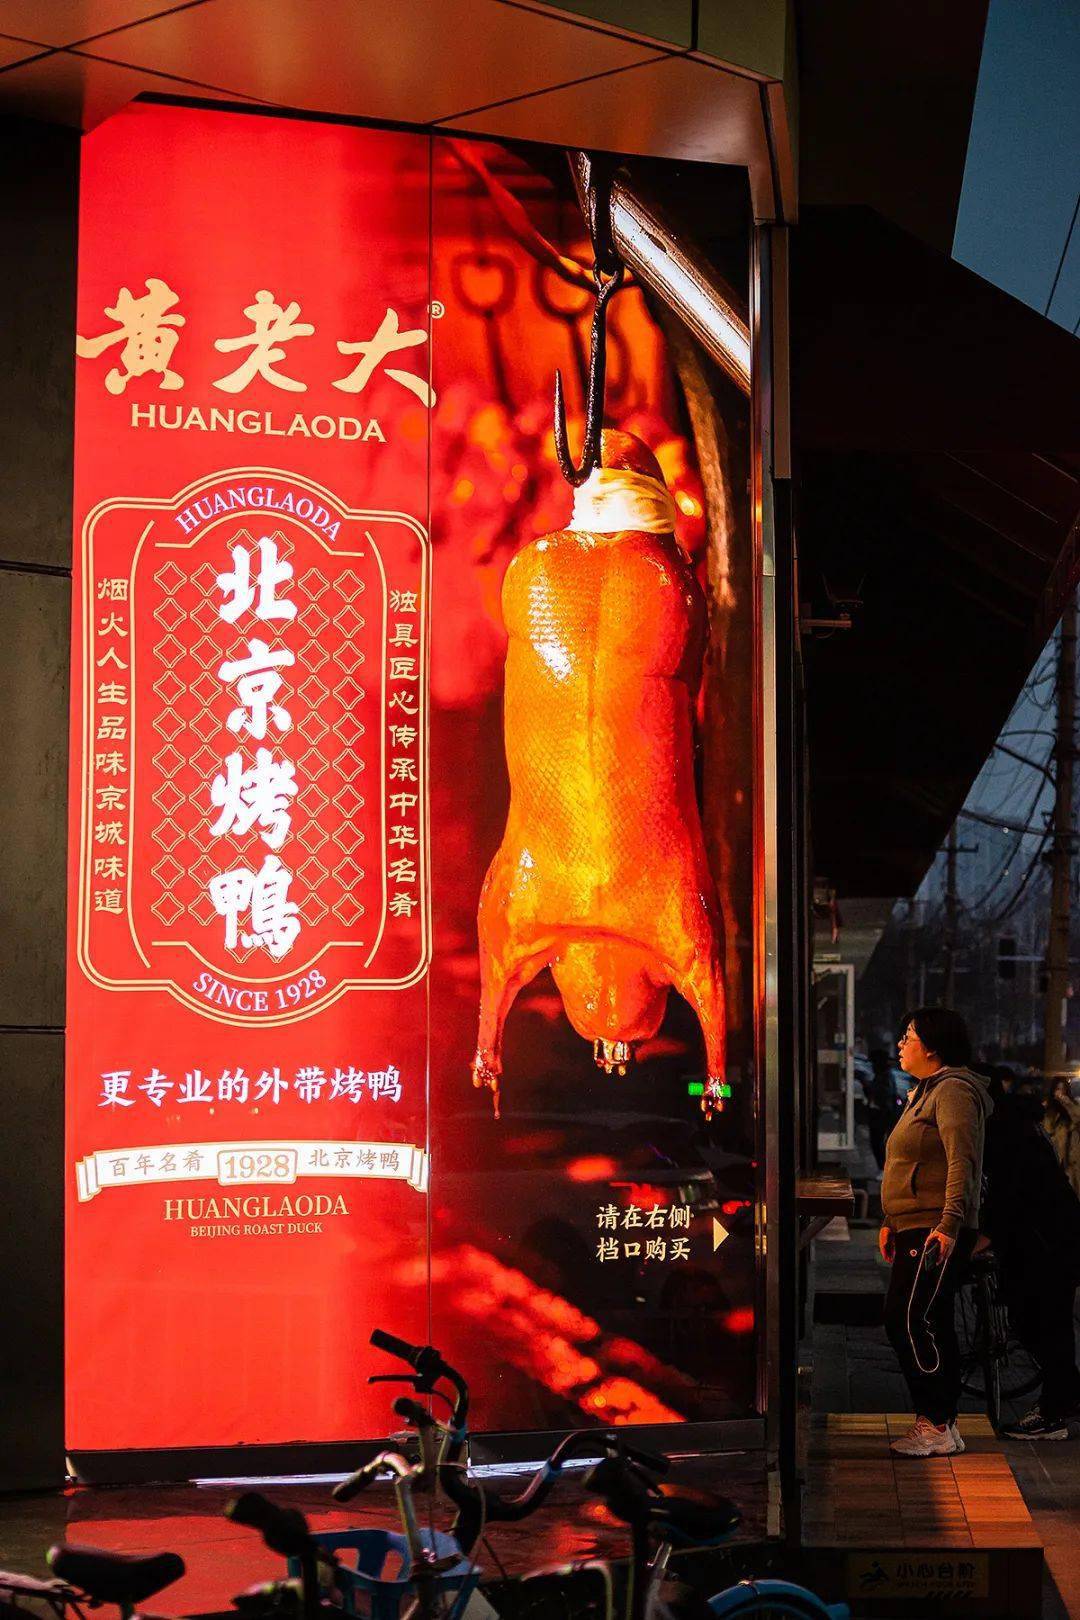 北京烤鸭也开始玩起新零售?这两家品牌设计有什么亮点?